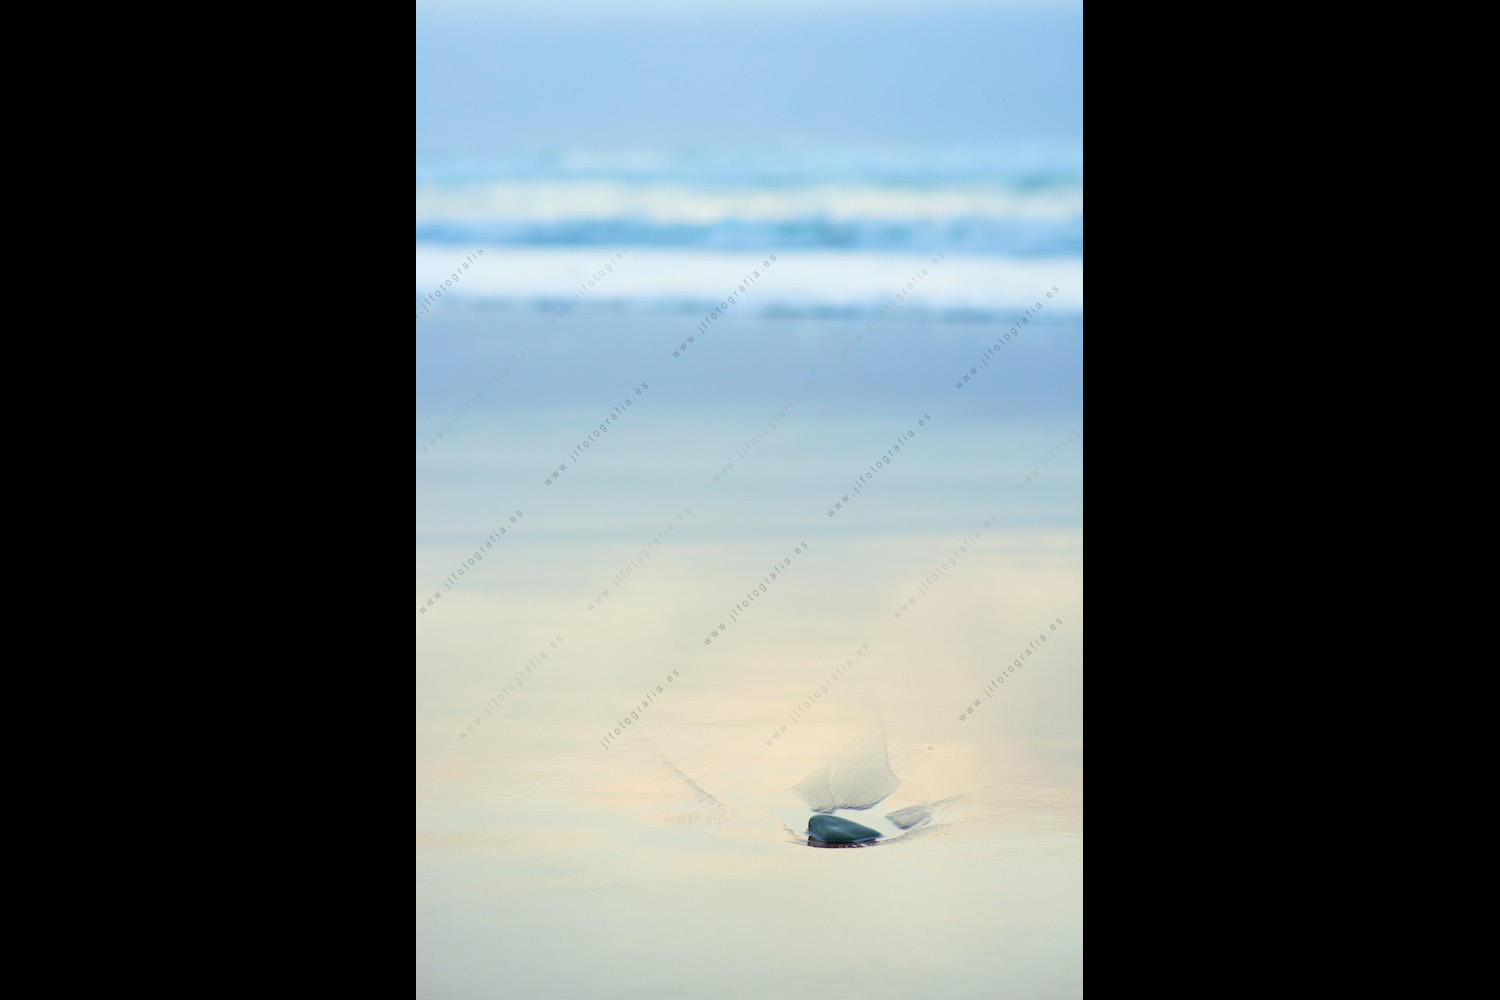 Detalle de una escena de playa con una piedra en la arena.